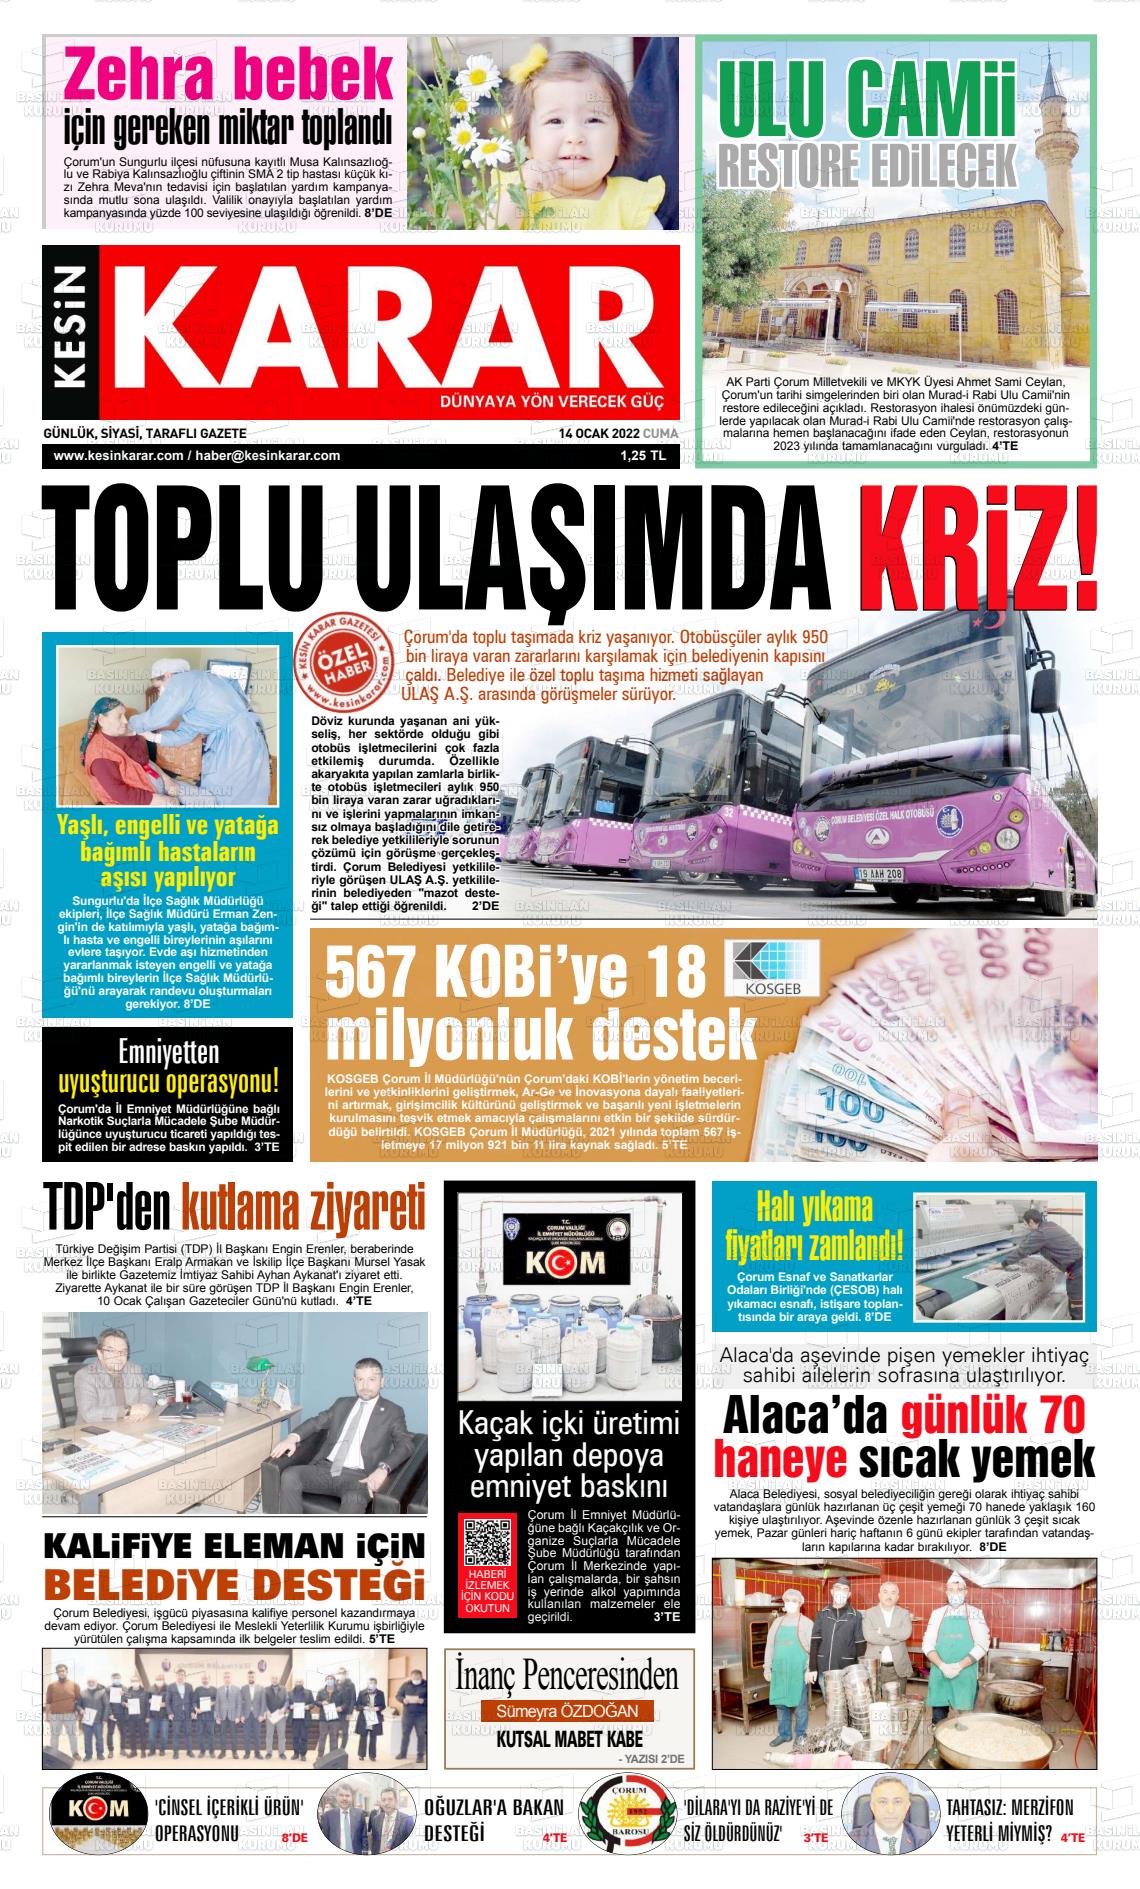 14 Ocak 2022 Kesin Karar Gazete Manşeti